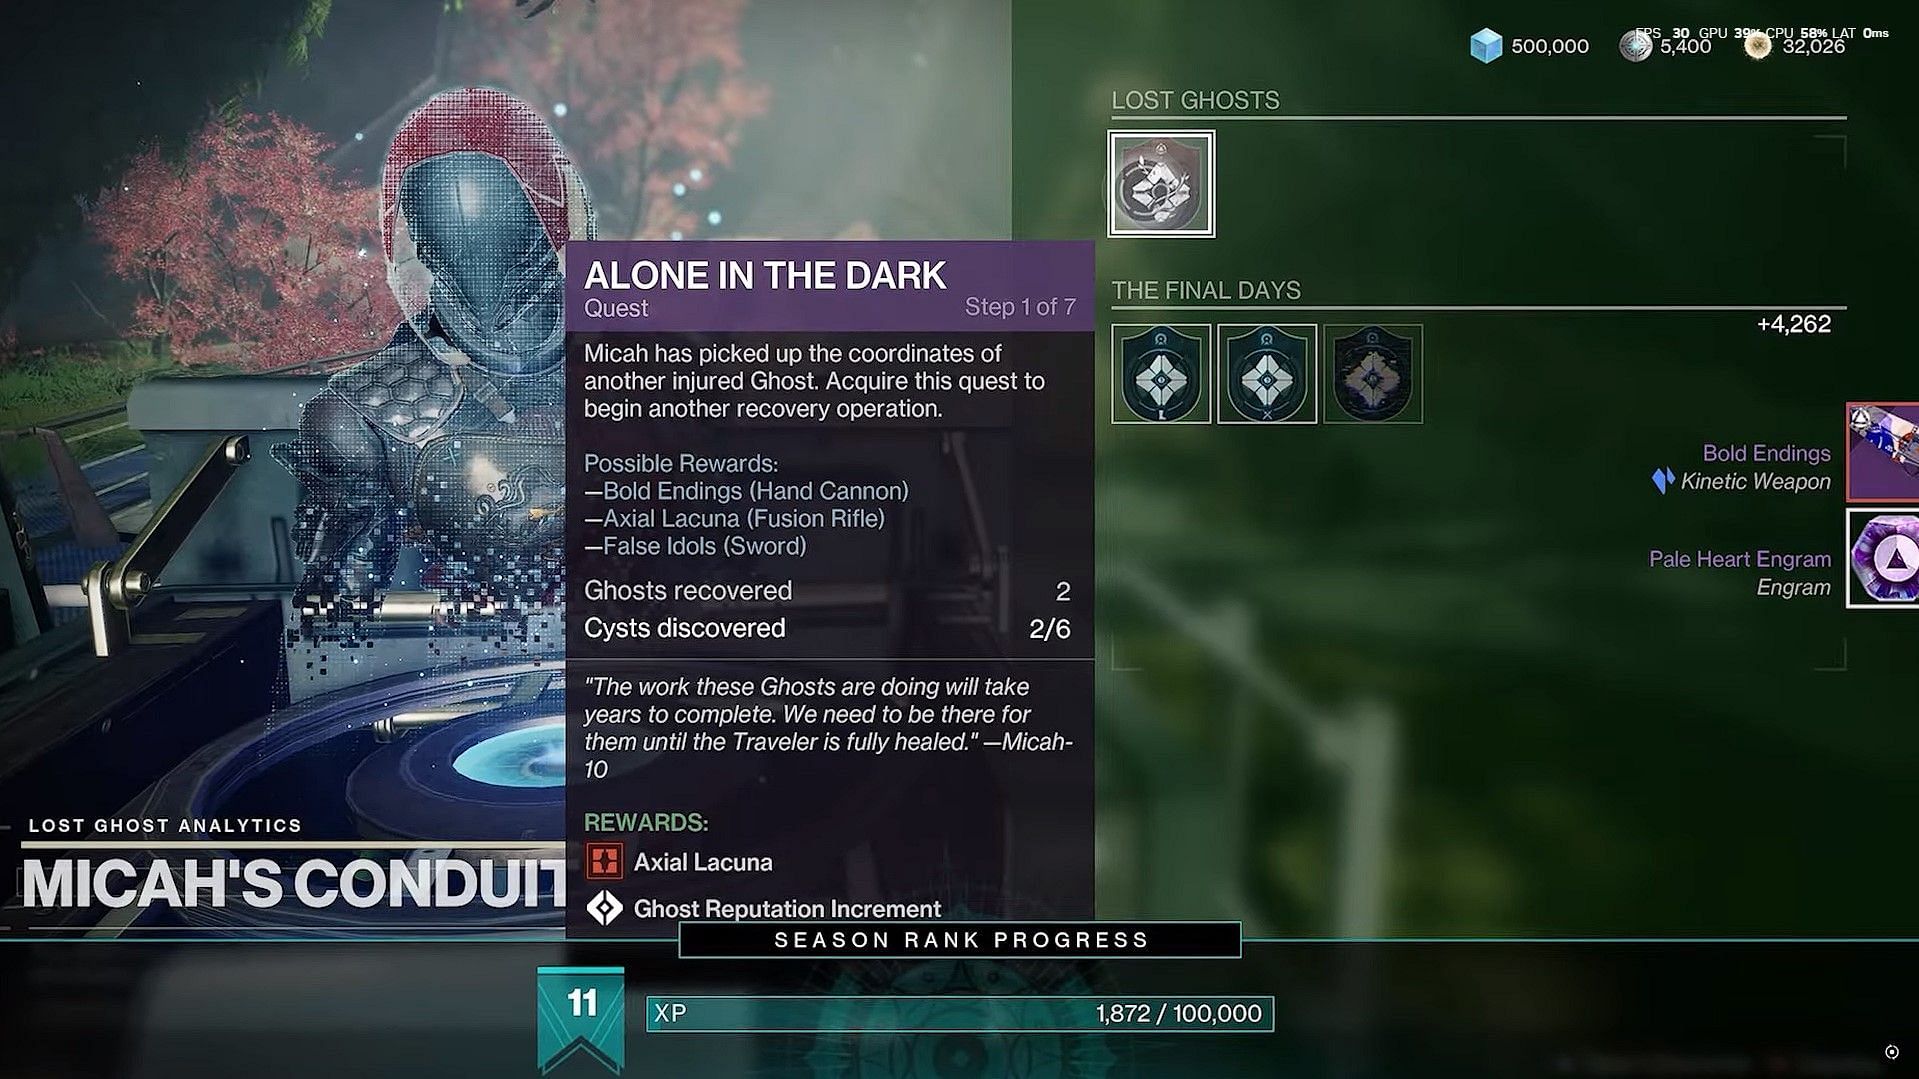 Alone in the Dark quest in Destiny 2 (Image via Bungie)